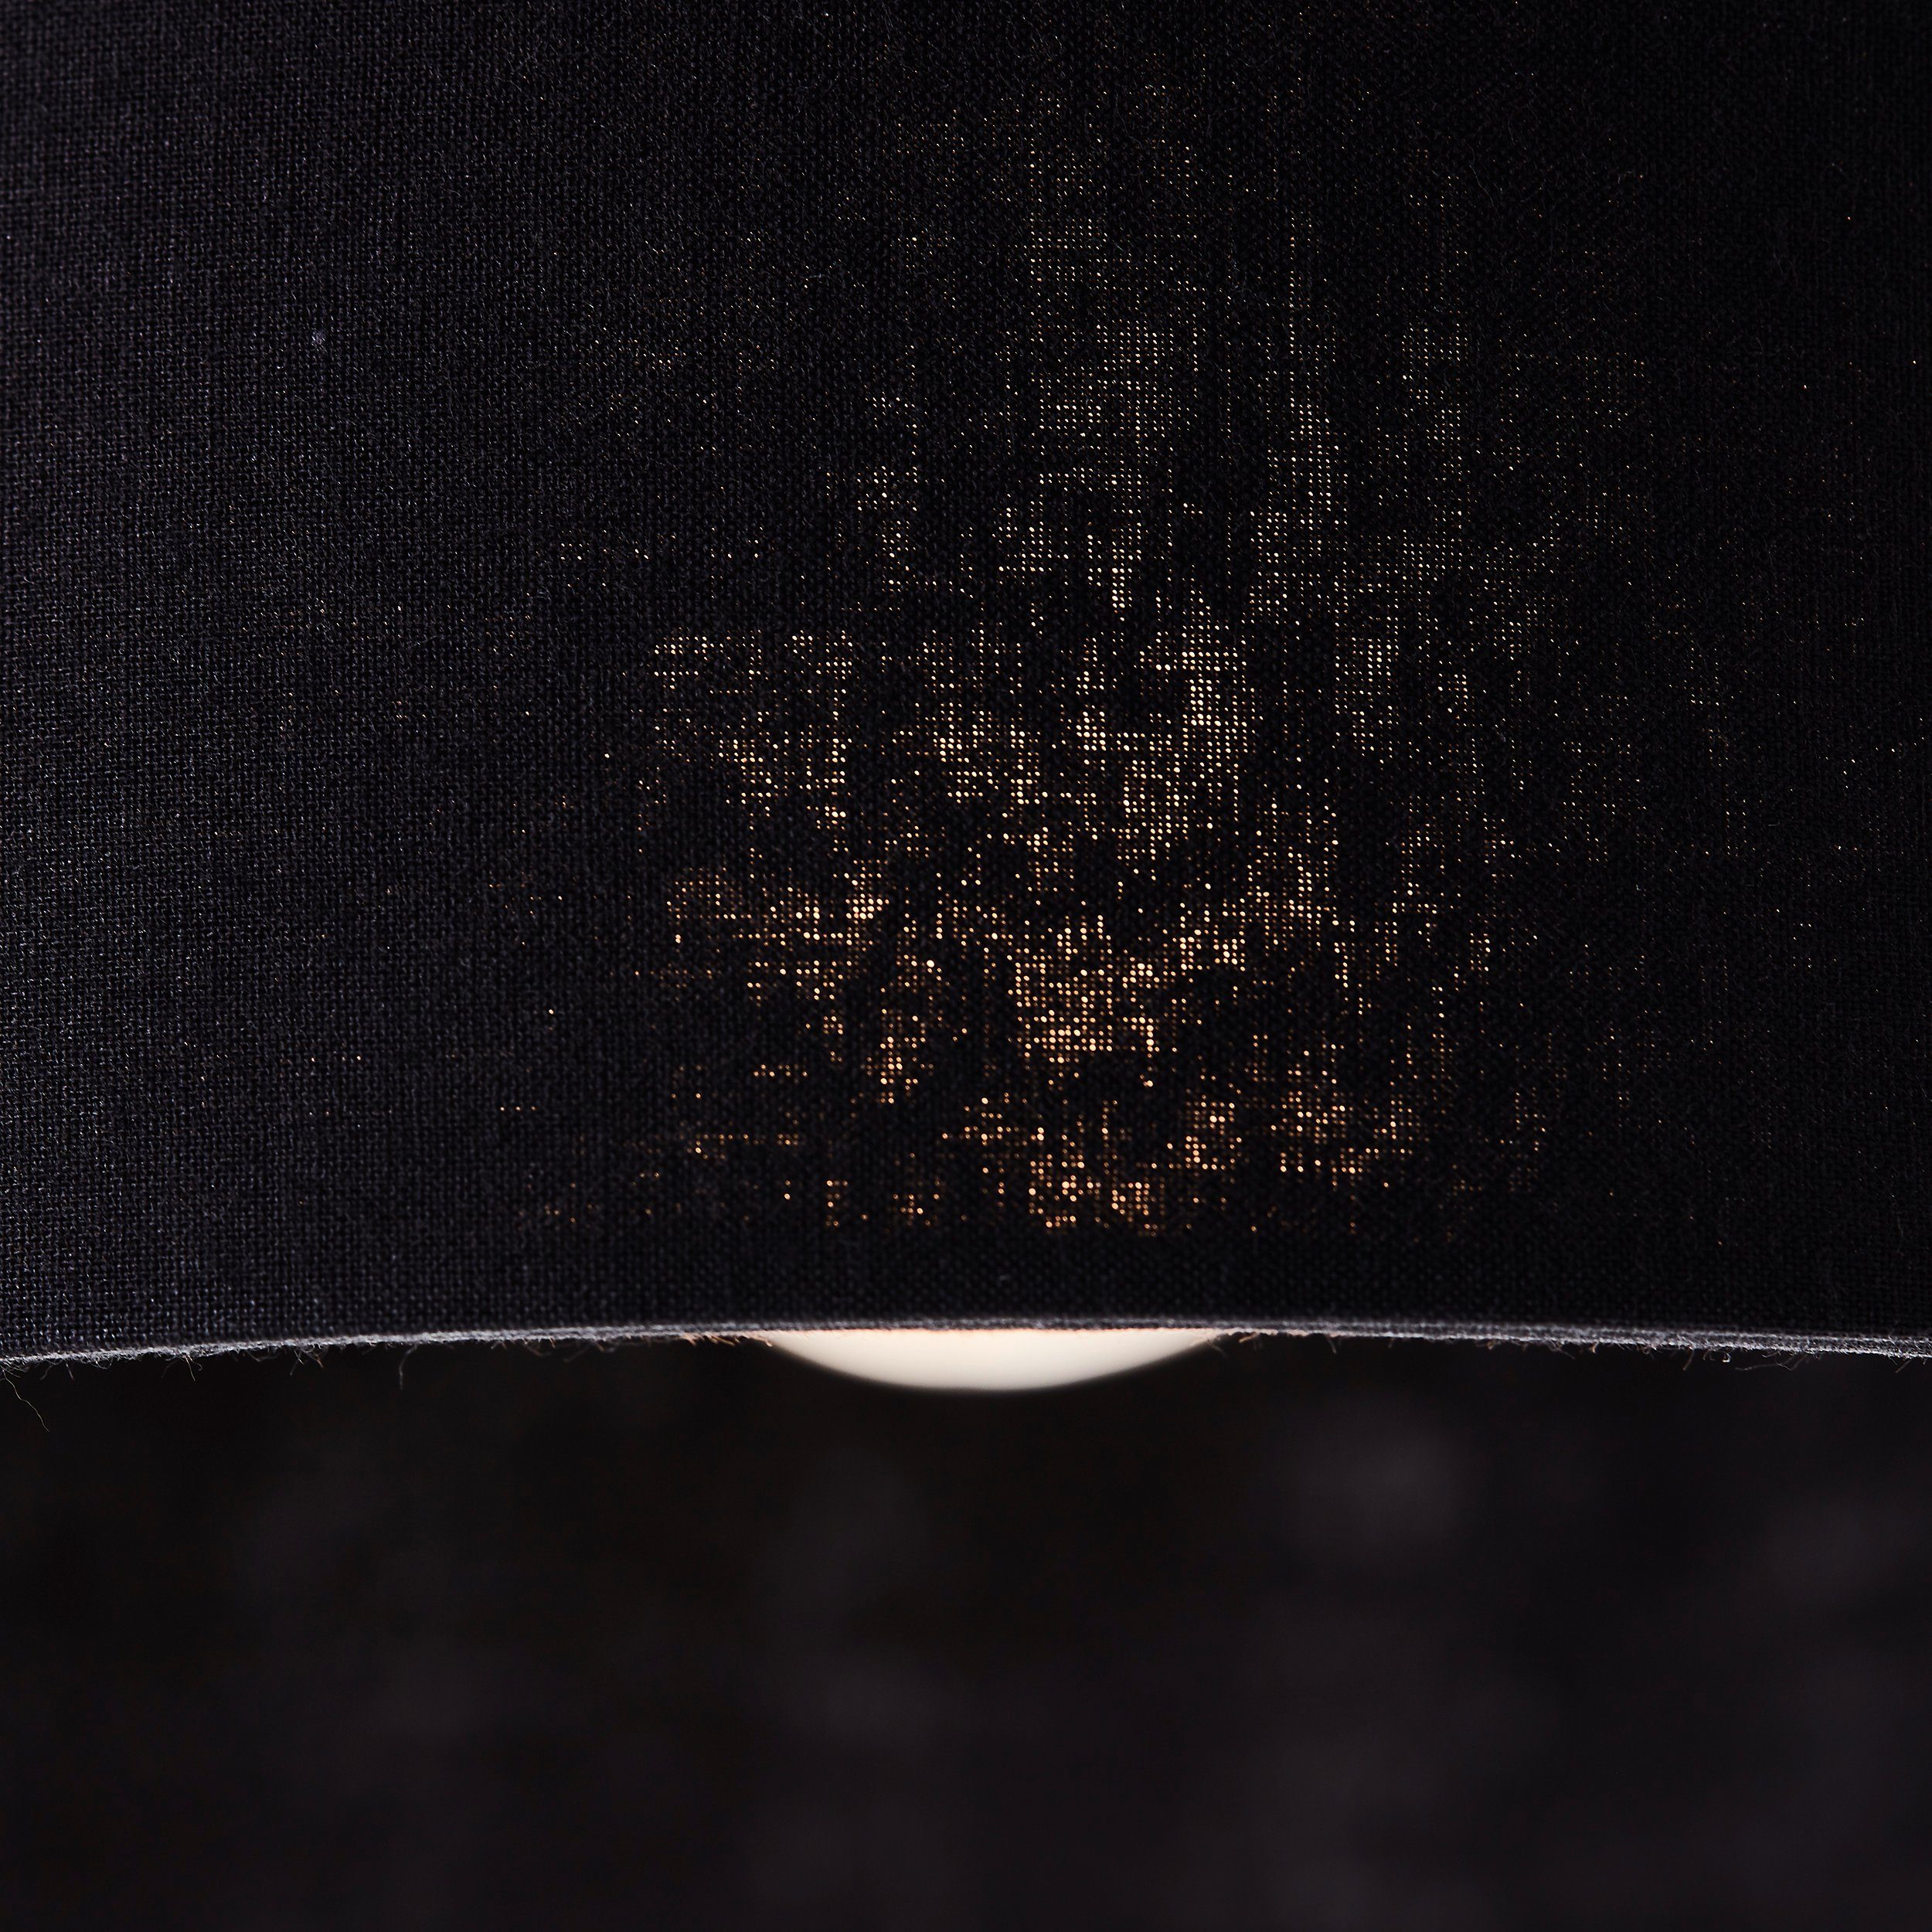 Metall/Textil schwarz gebürstet matt/messing Tischleuchte matt/messing Tischleuchte Tischleuchte gebürstet, Brilliant schwarz 52cm Annice Annice 52cm